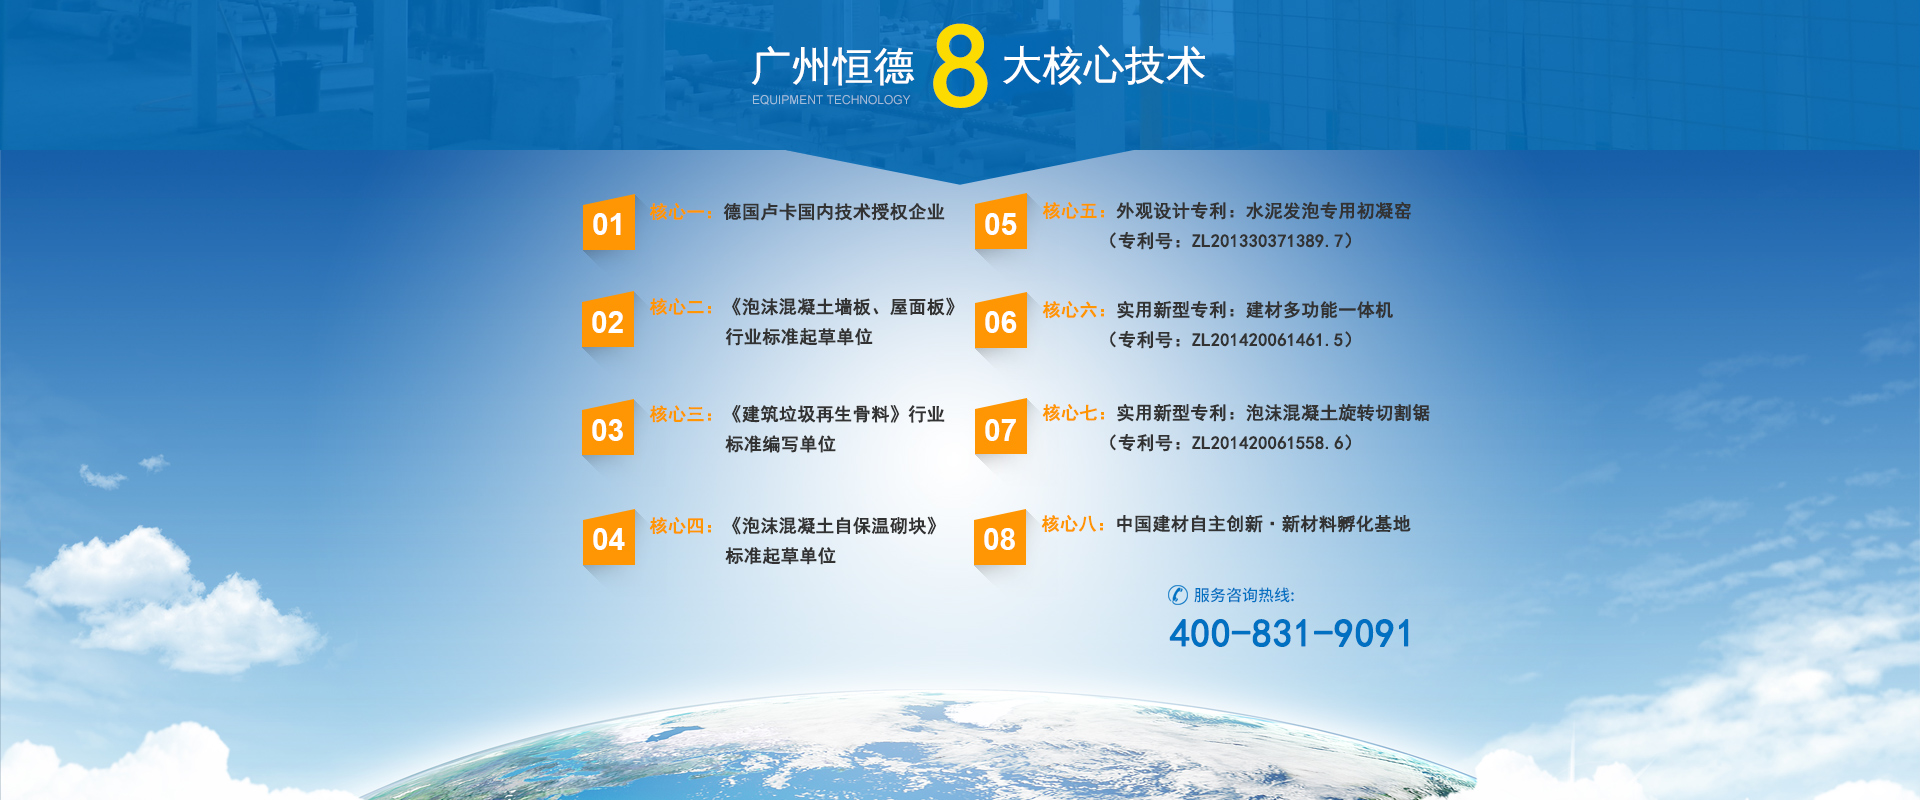 廣州恒德設備的7大核心技術